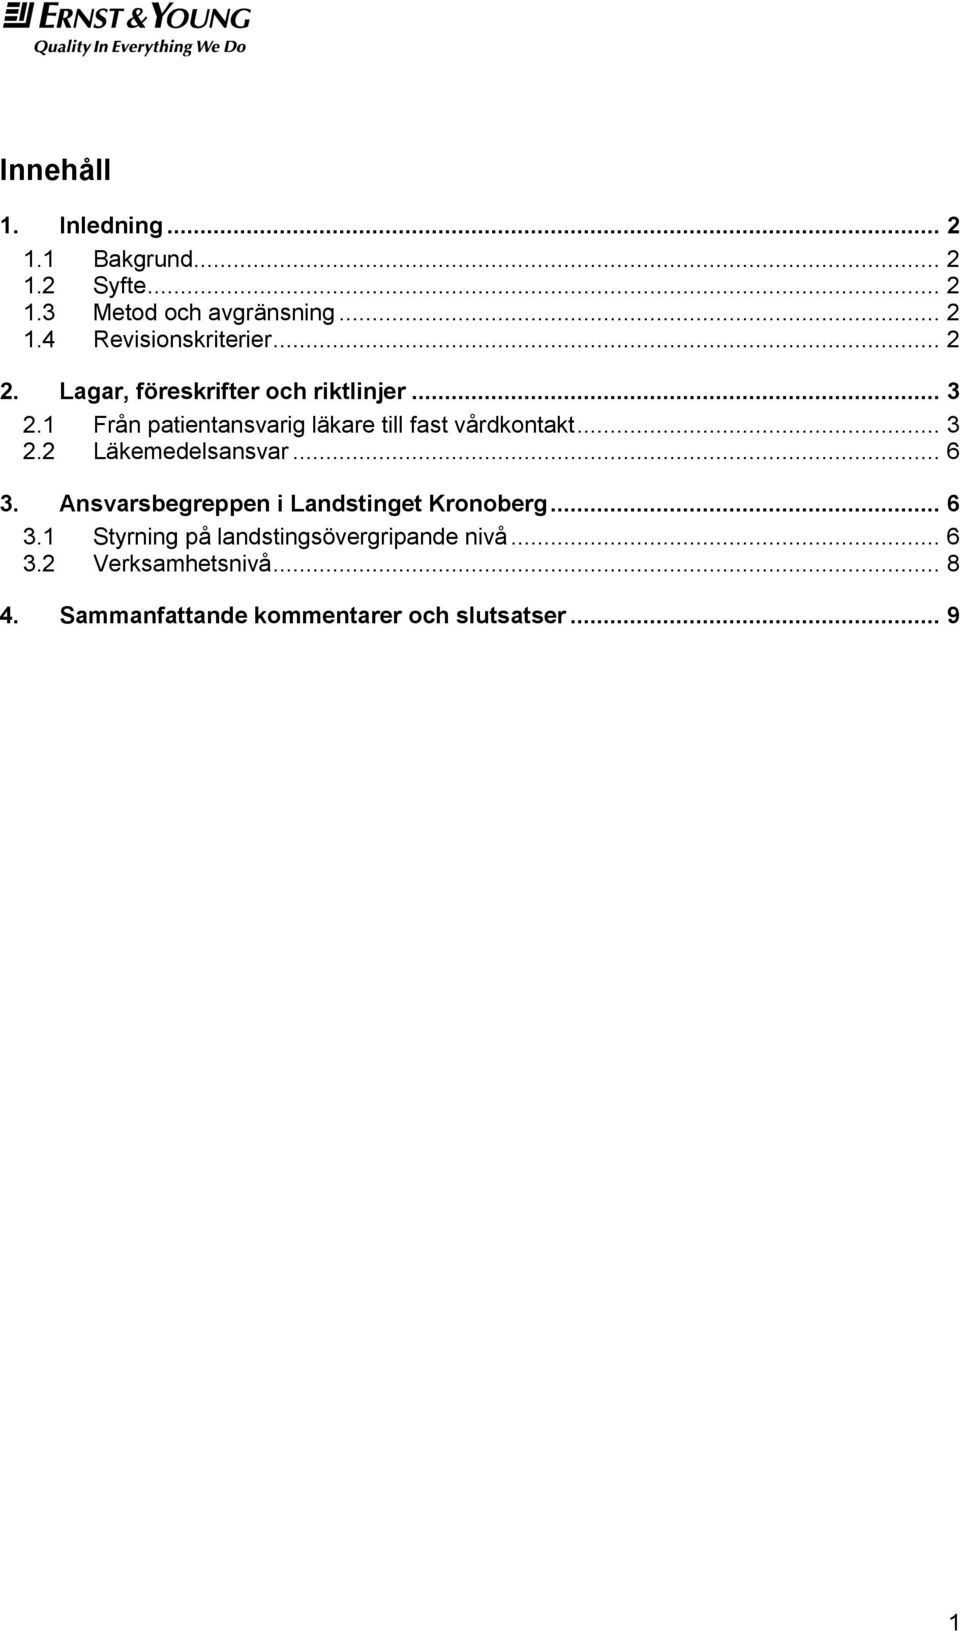 .. 3 2.2 Läkemedelsansvar... 6 3. Ansvarsbegreppen i Landstinget Kronoberg... 6 3.1 Styrning på landstingsövergripande nivå.